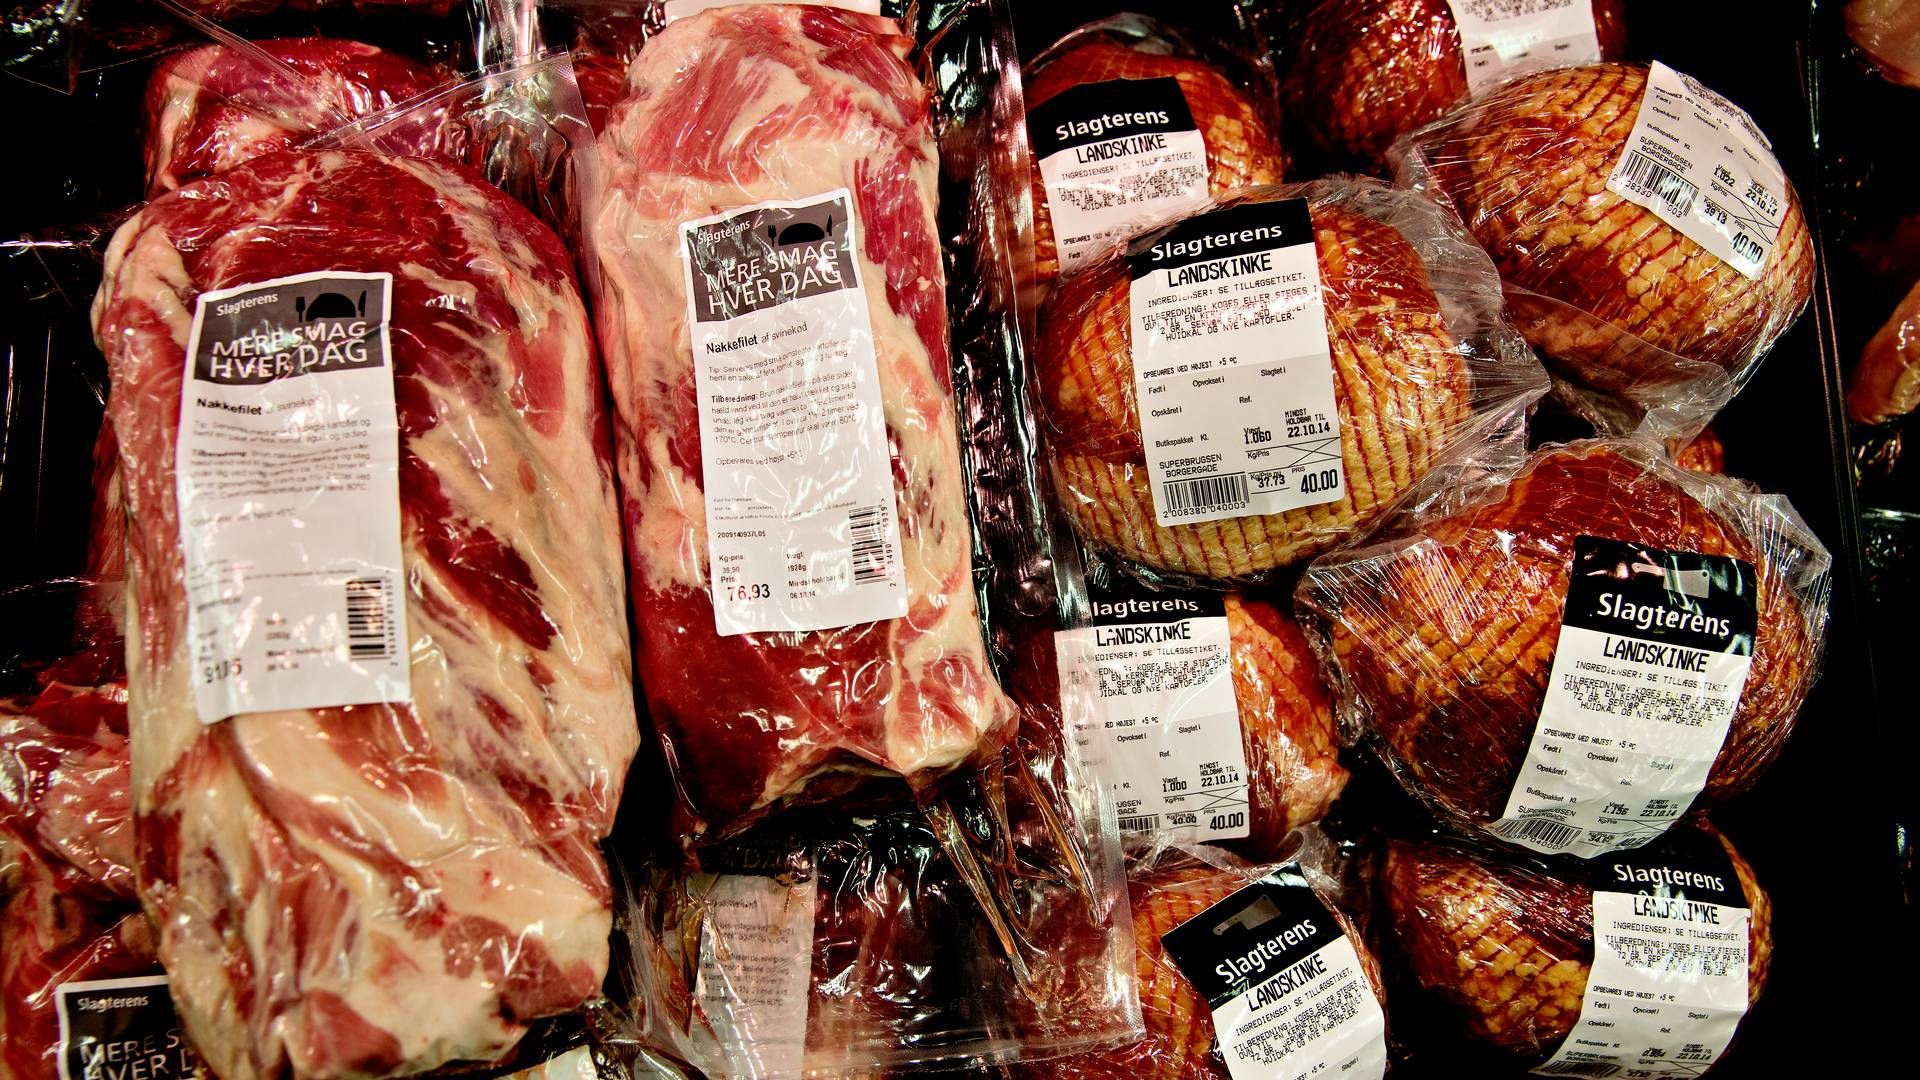 Supermarkeder sætter kød lås og slå — FødevareWatch